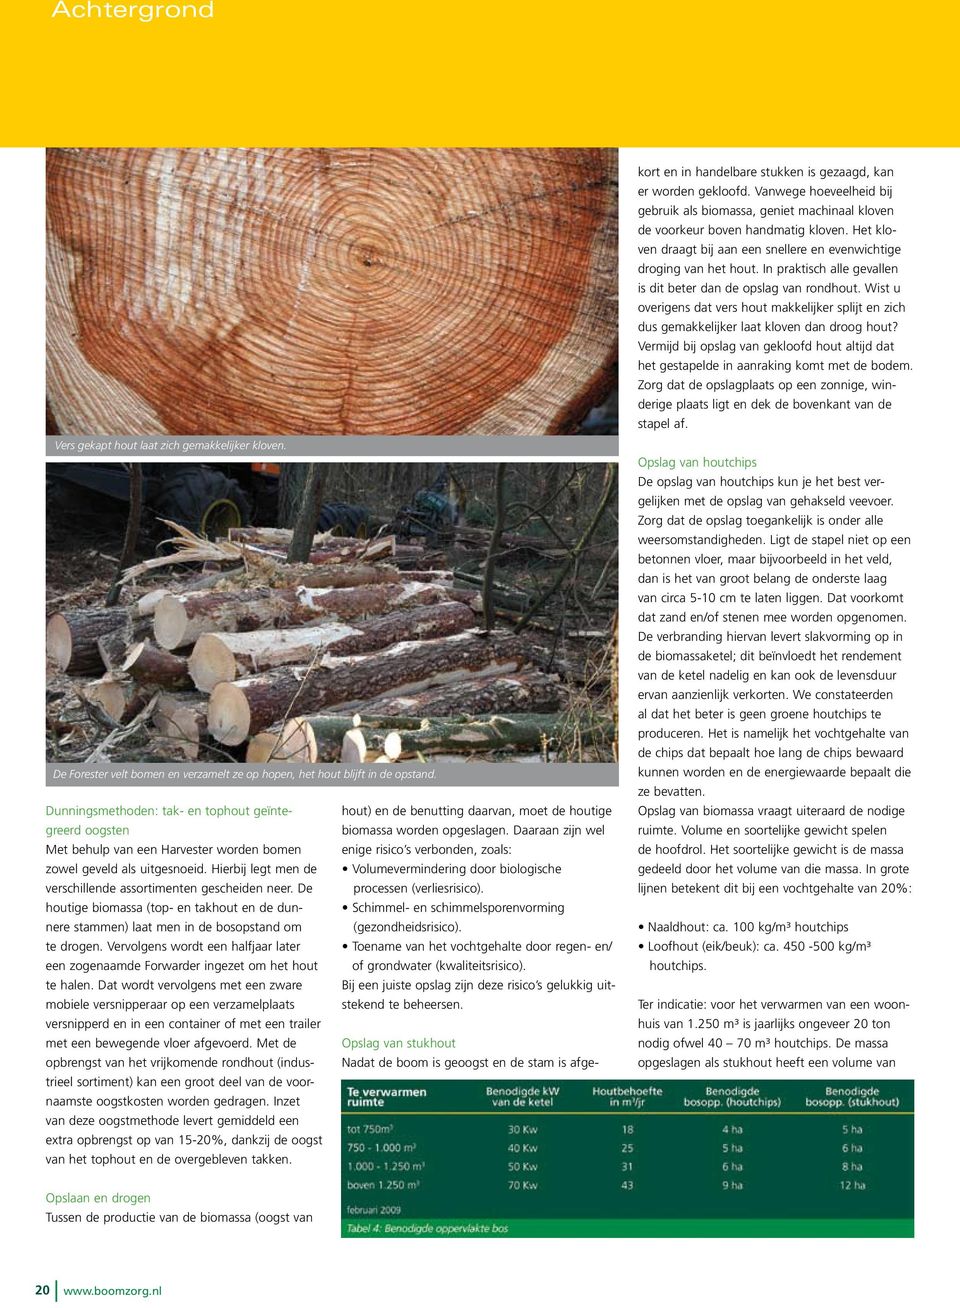 Daaraan zijn wel hout) en de benutting daarvan, moet de houtige Met behulp van een Harvester worden bomen enige risico s verbonden, zoals: zowel geveld als uitgesnoeid.